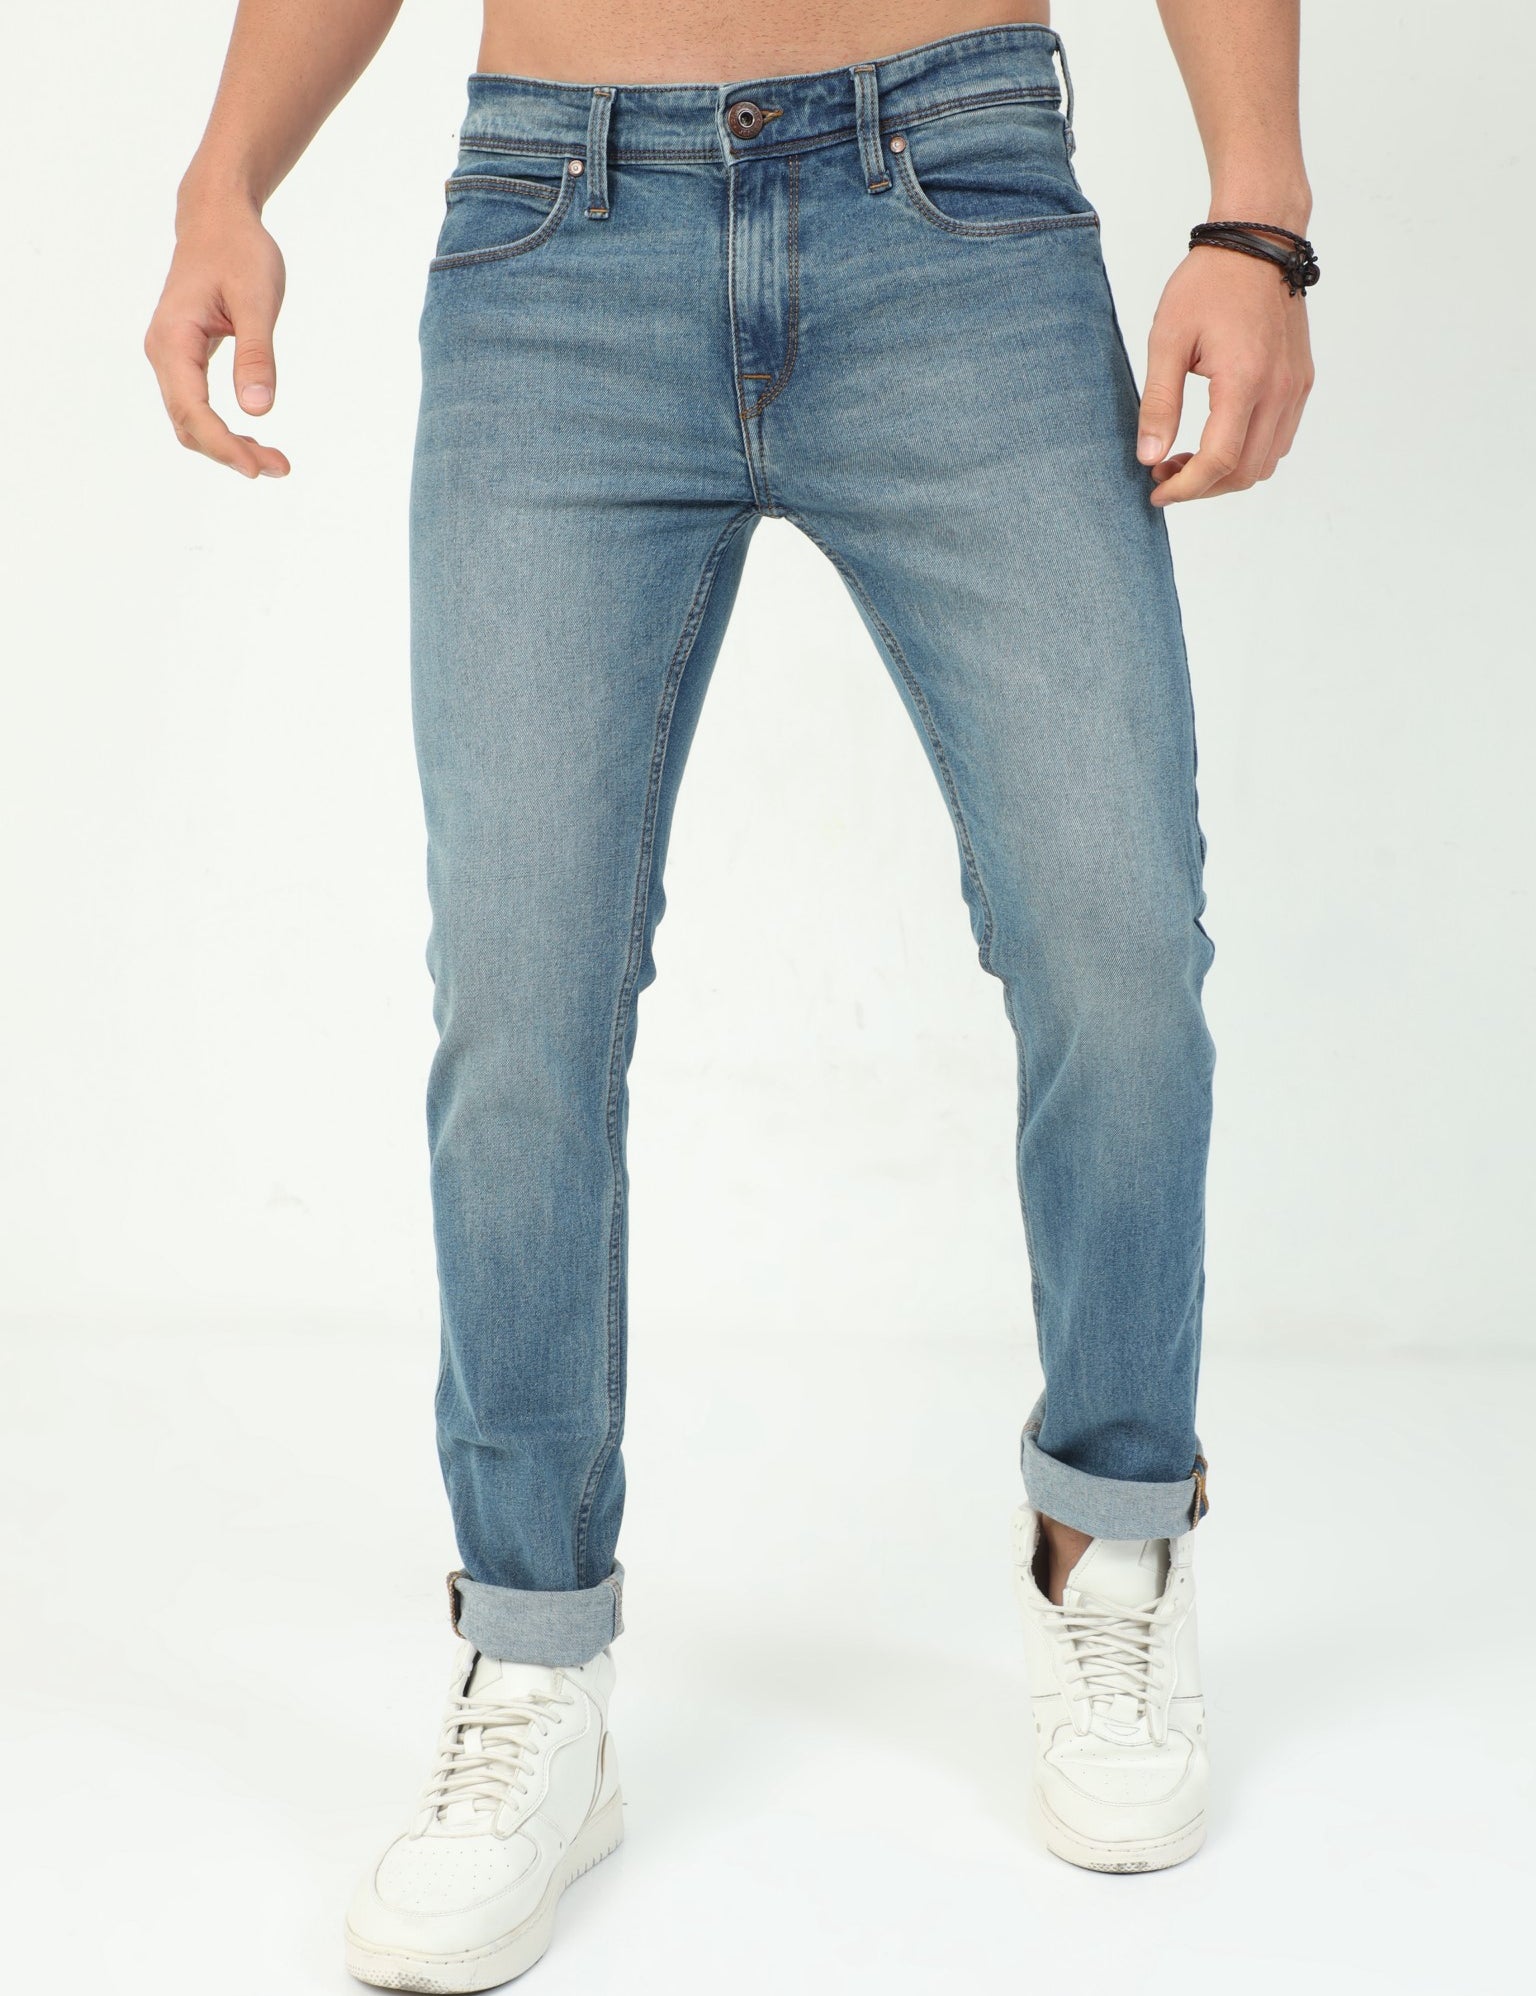 Lightblue Slim Fit Jeans for Men 